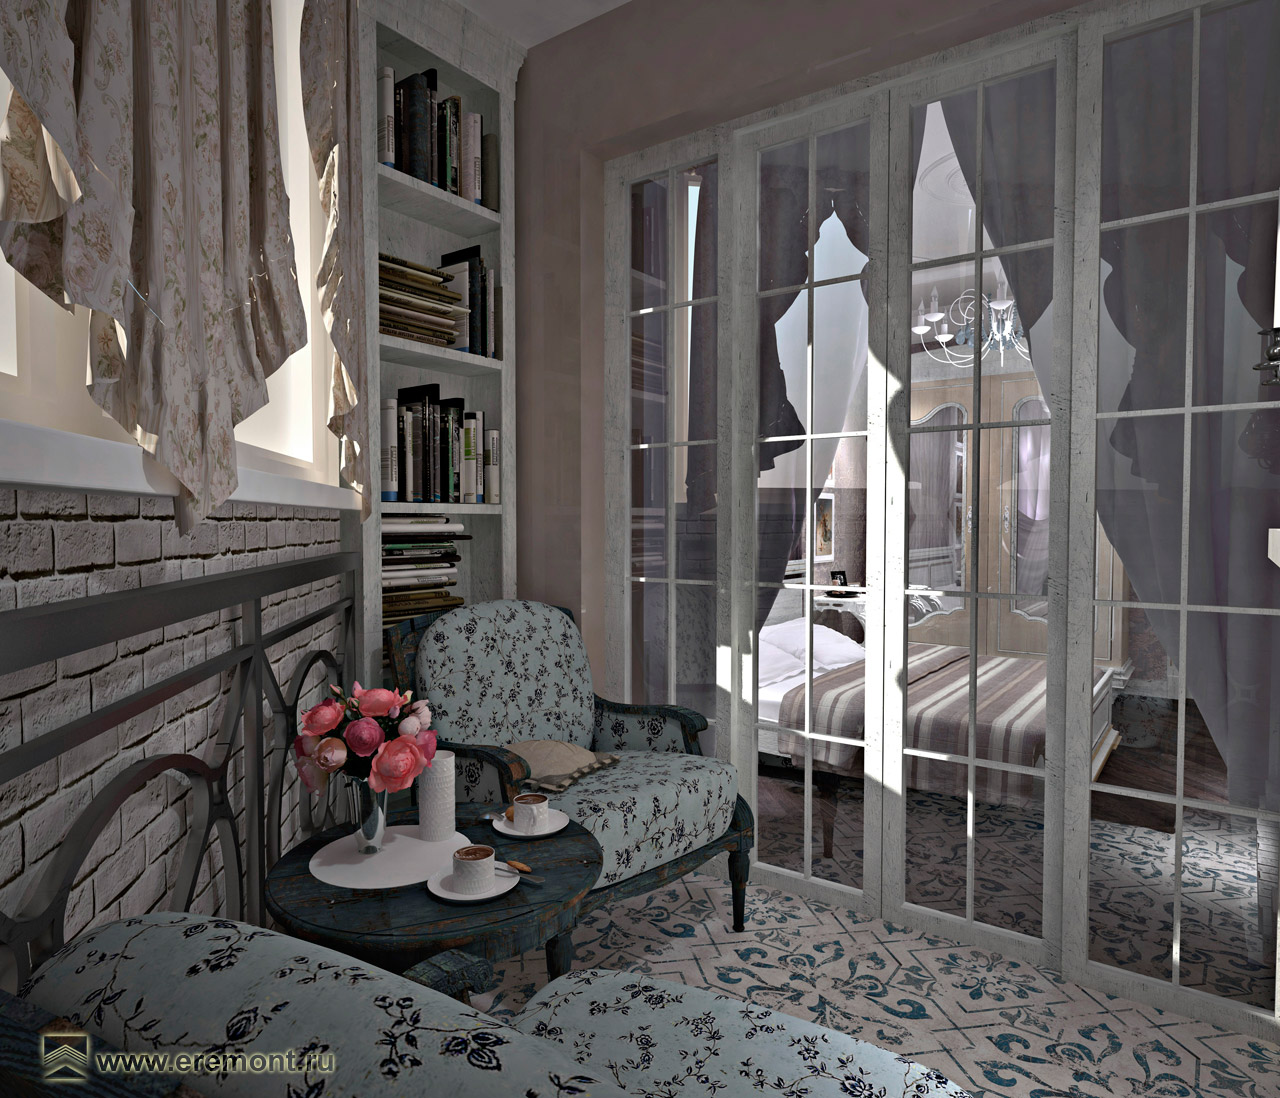 Оформление интерьера спальни в стиле прованс. Фото № 42629.